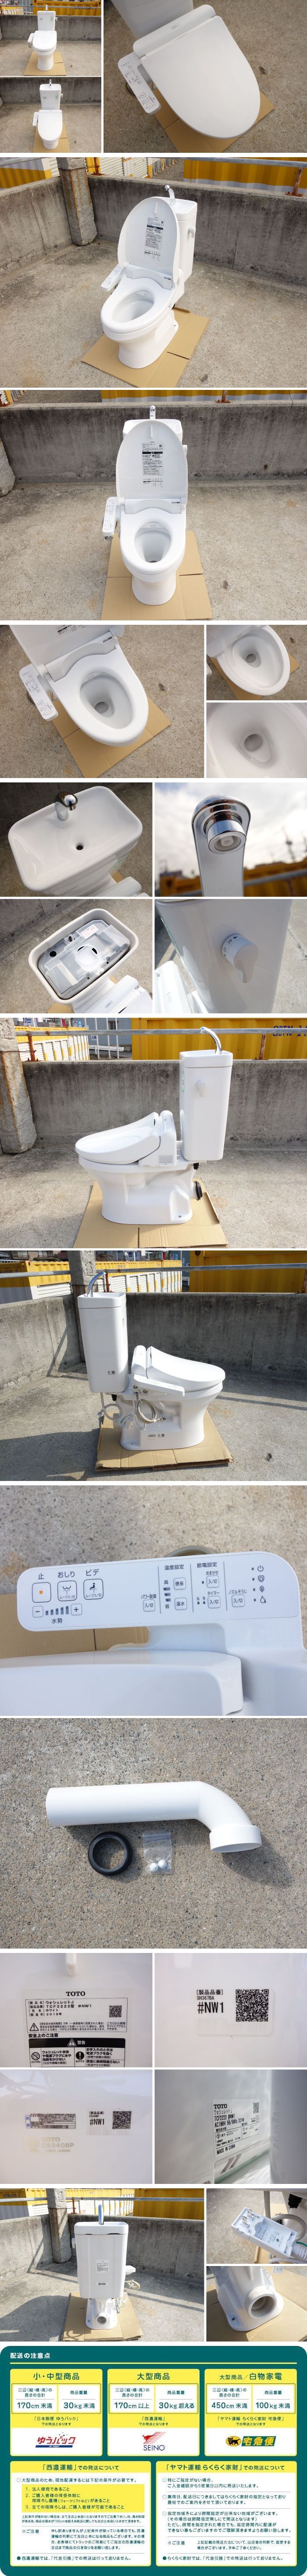 品質保証SALED▼TOTO トイレ ウォシュレット シャワートイレ 便器 便座 タンク 便所 洋式 壁排水 電気便座 手洗いあり 2018年 (30250) 便器